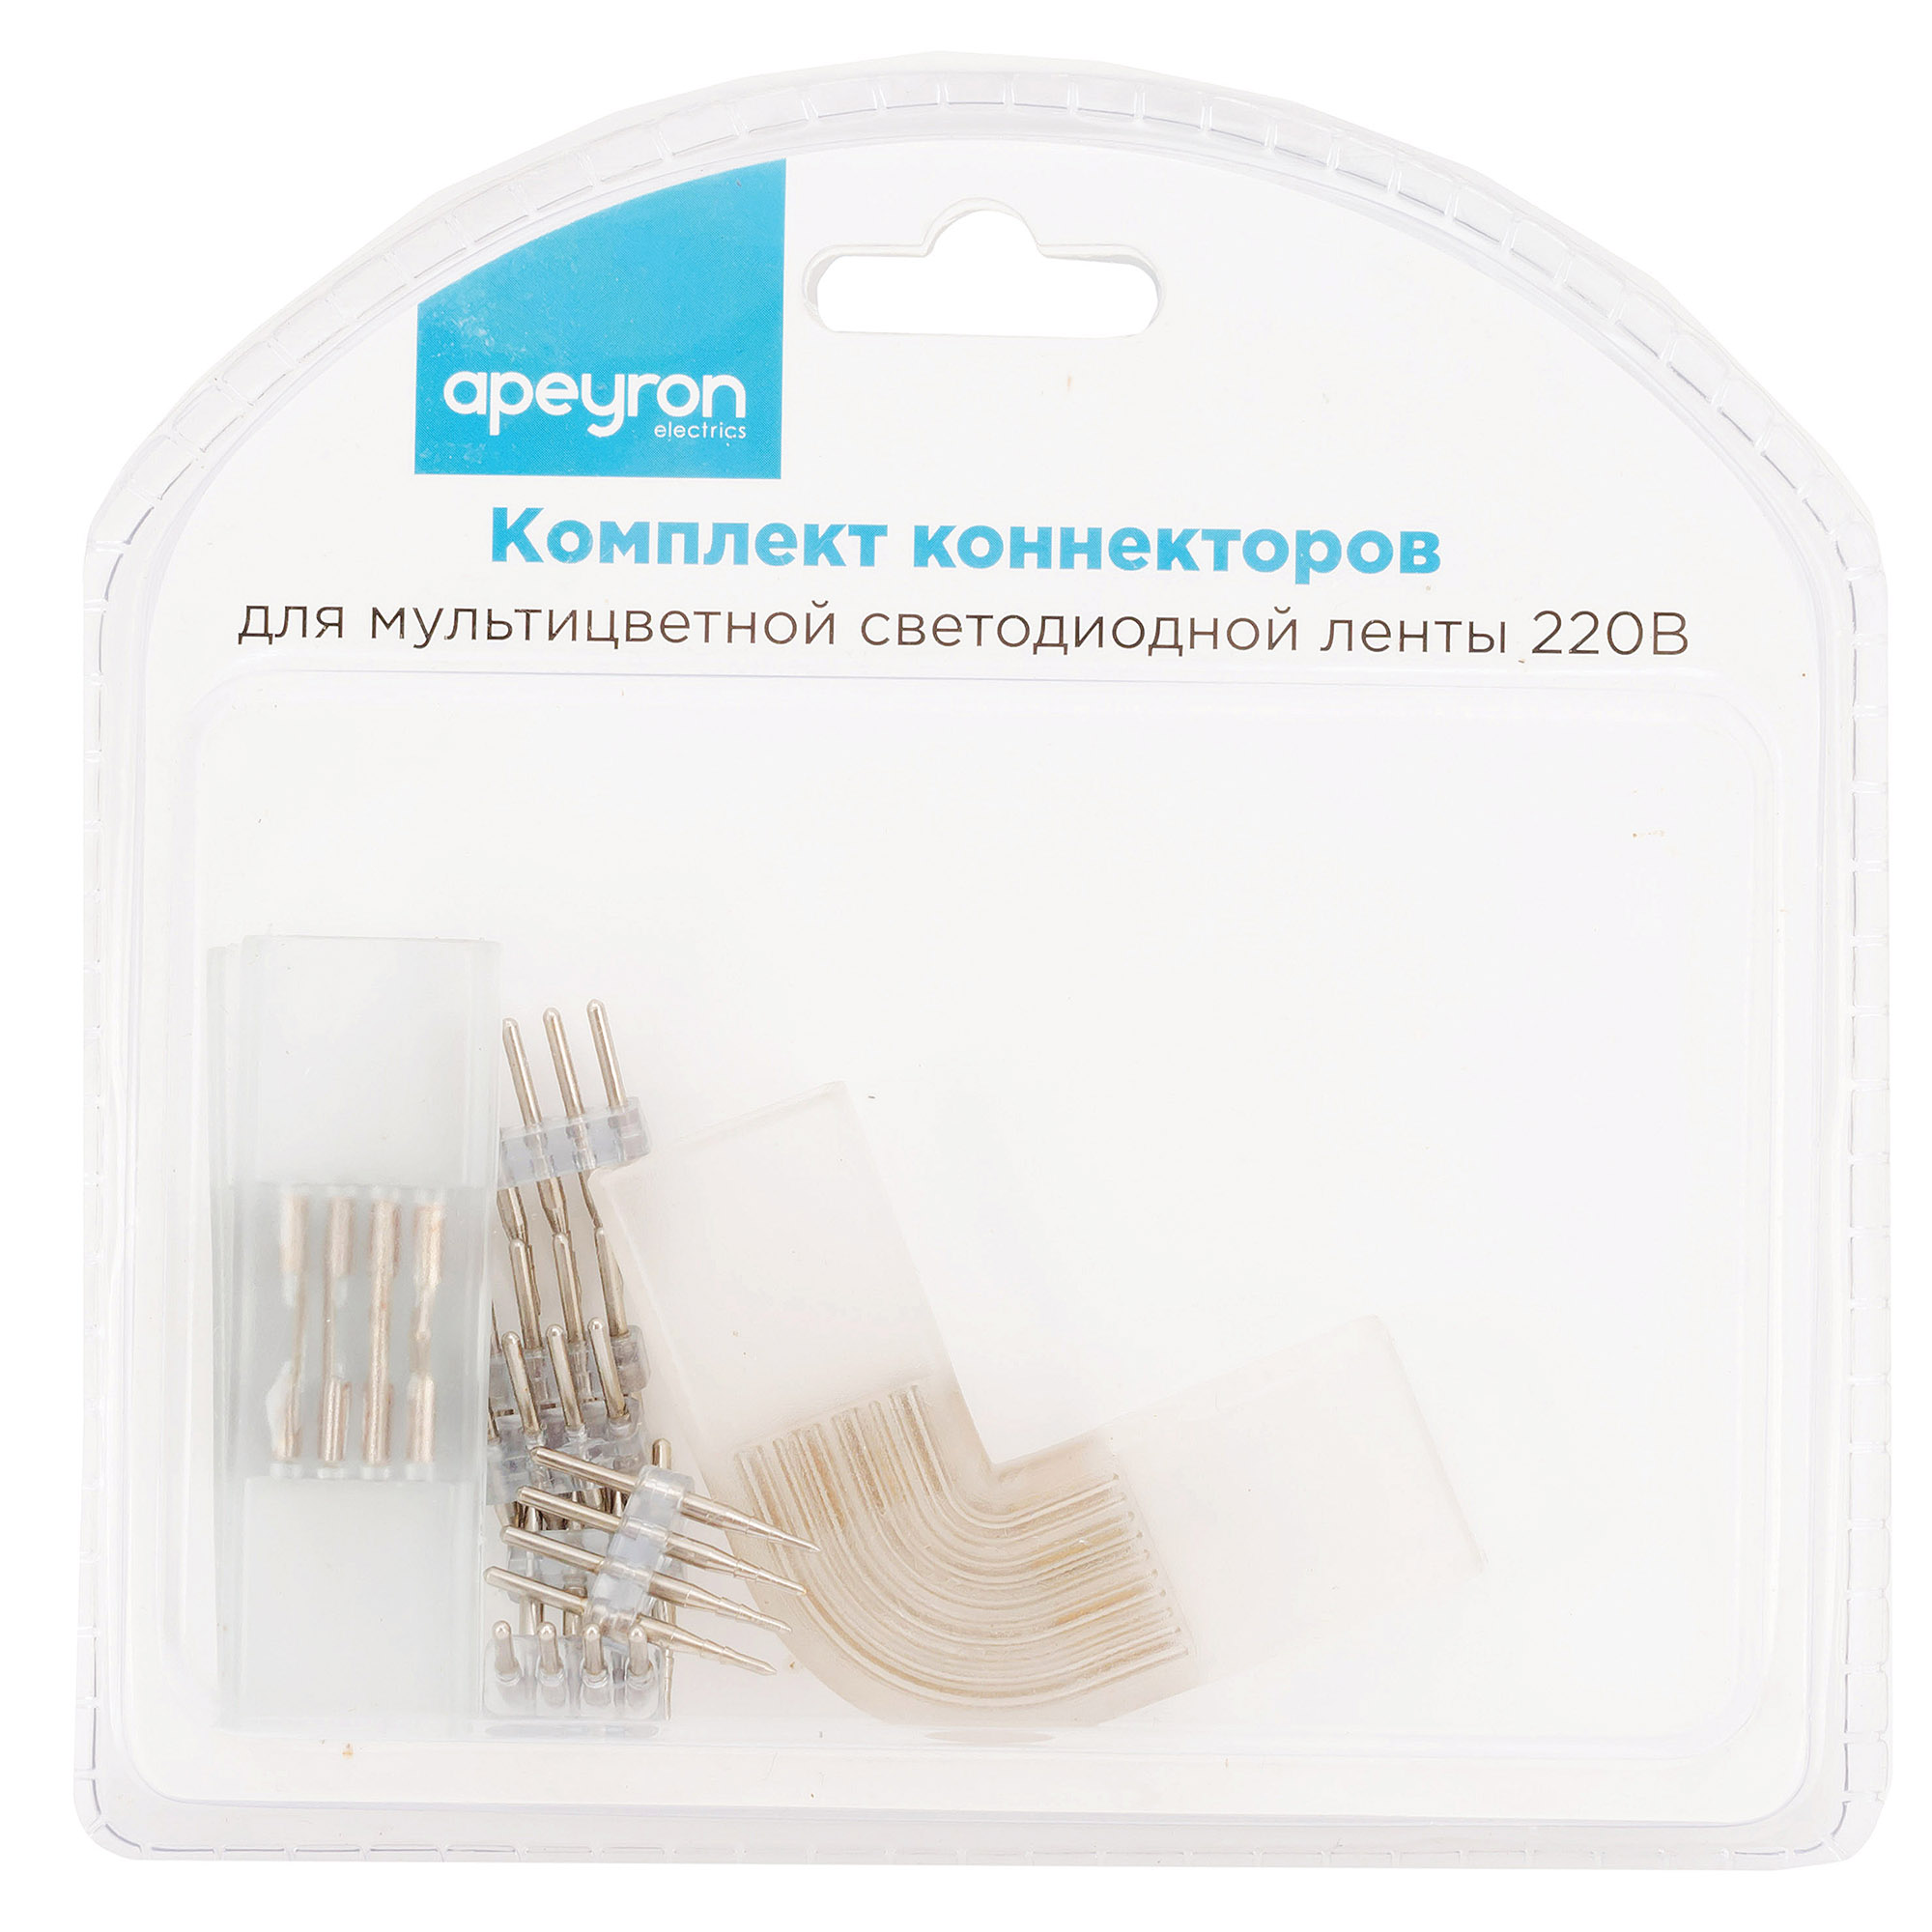 Комплект коннекторов Apeyron (прямой и L-образный) светодиодной ленты 220В smd5050 60д/м RGB 09-19